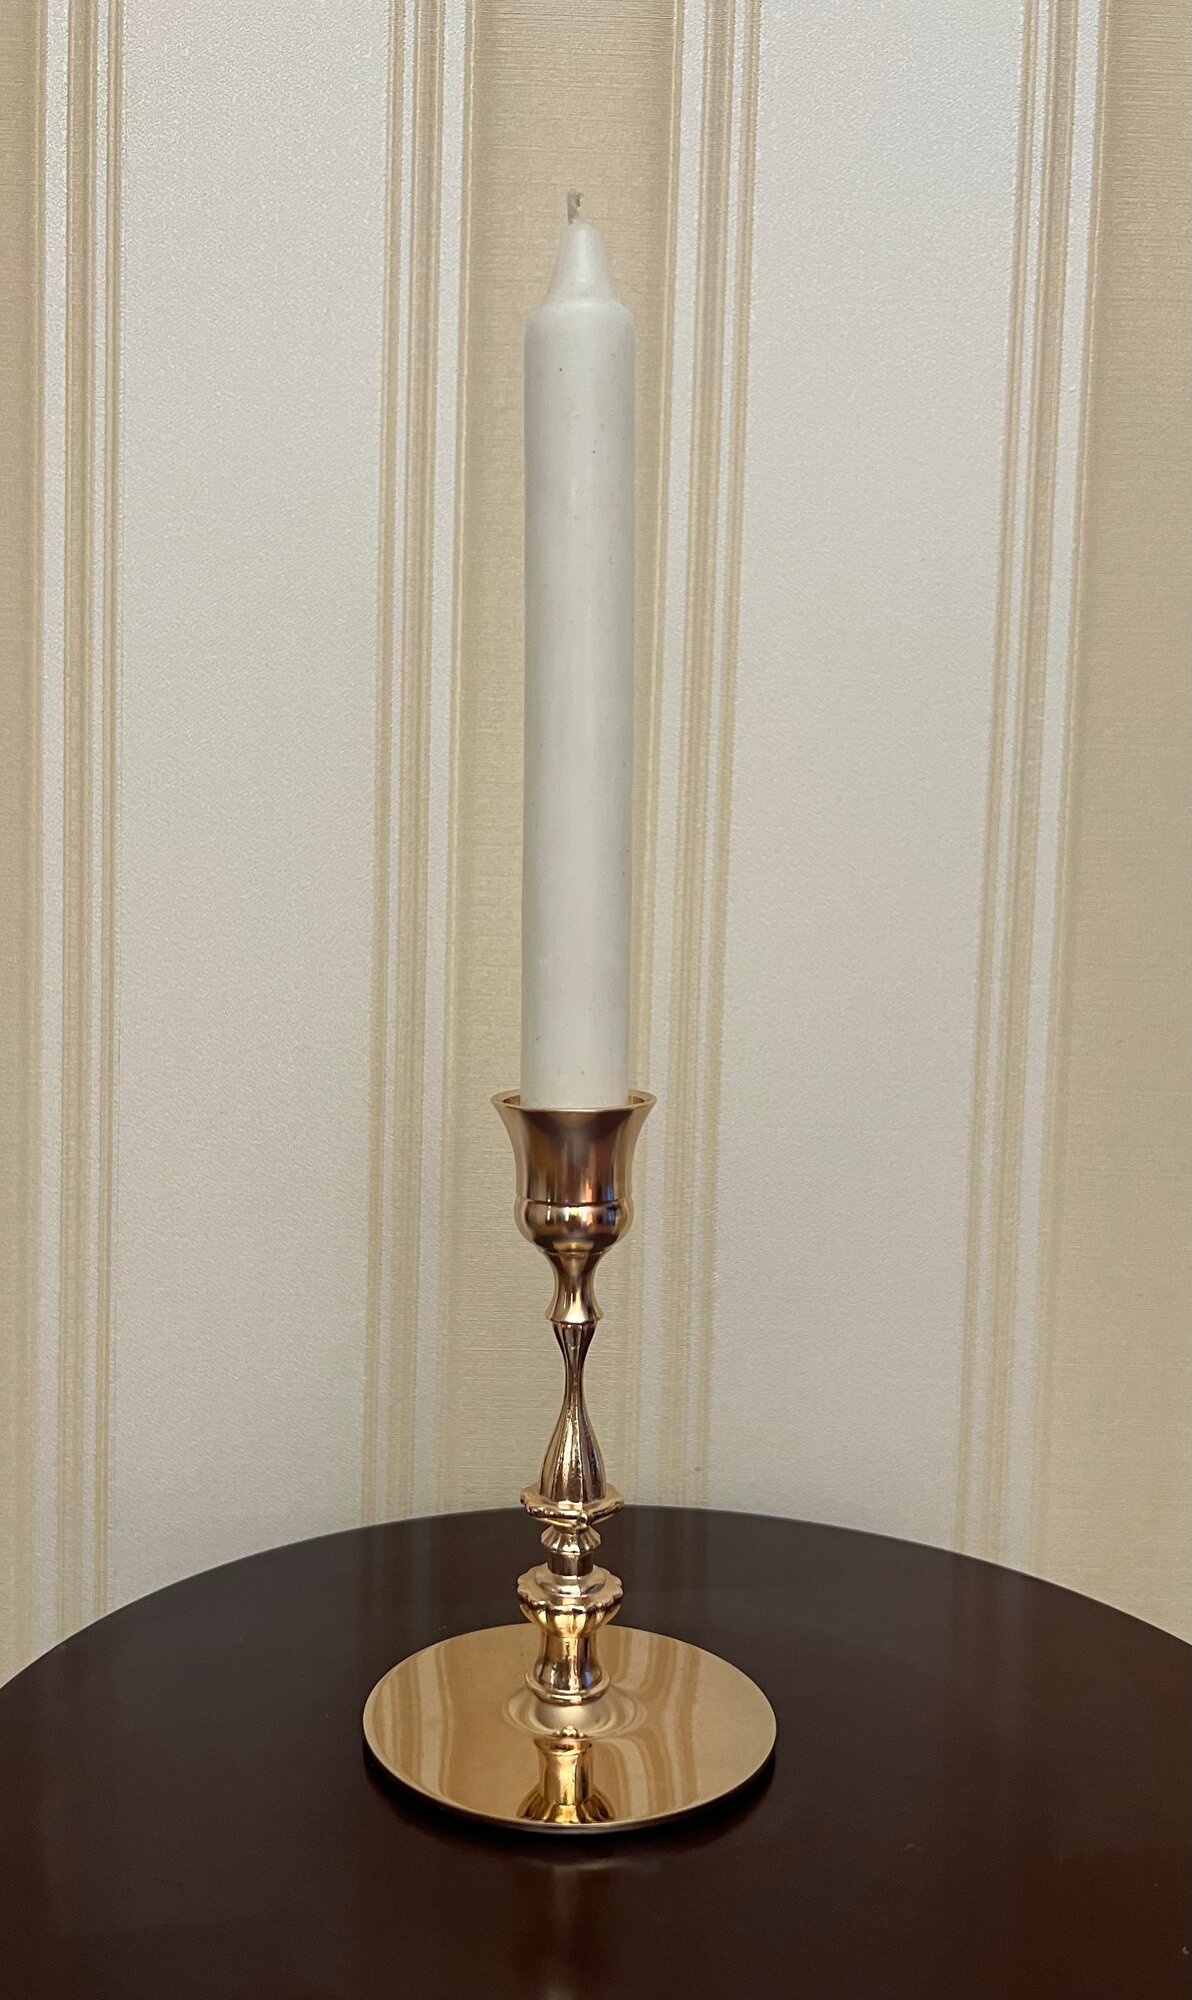 Подсвечник для свечи диаметром 2 см из металла золотой, высотой 130 мм